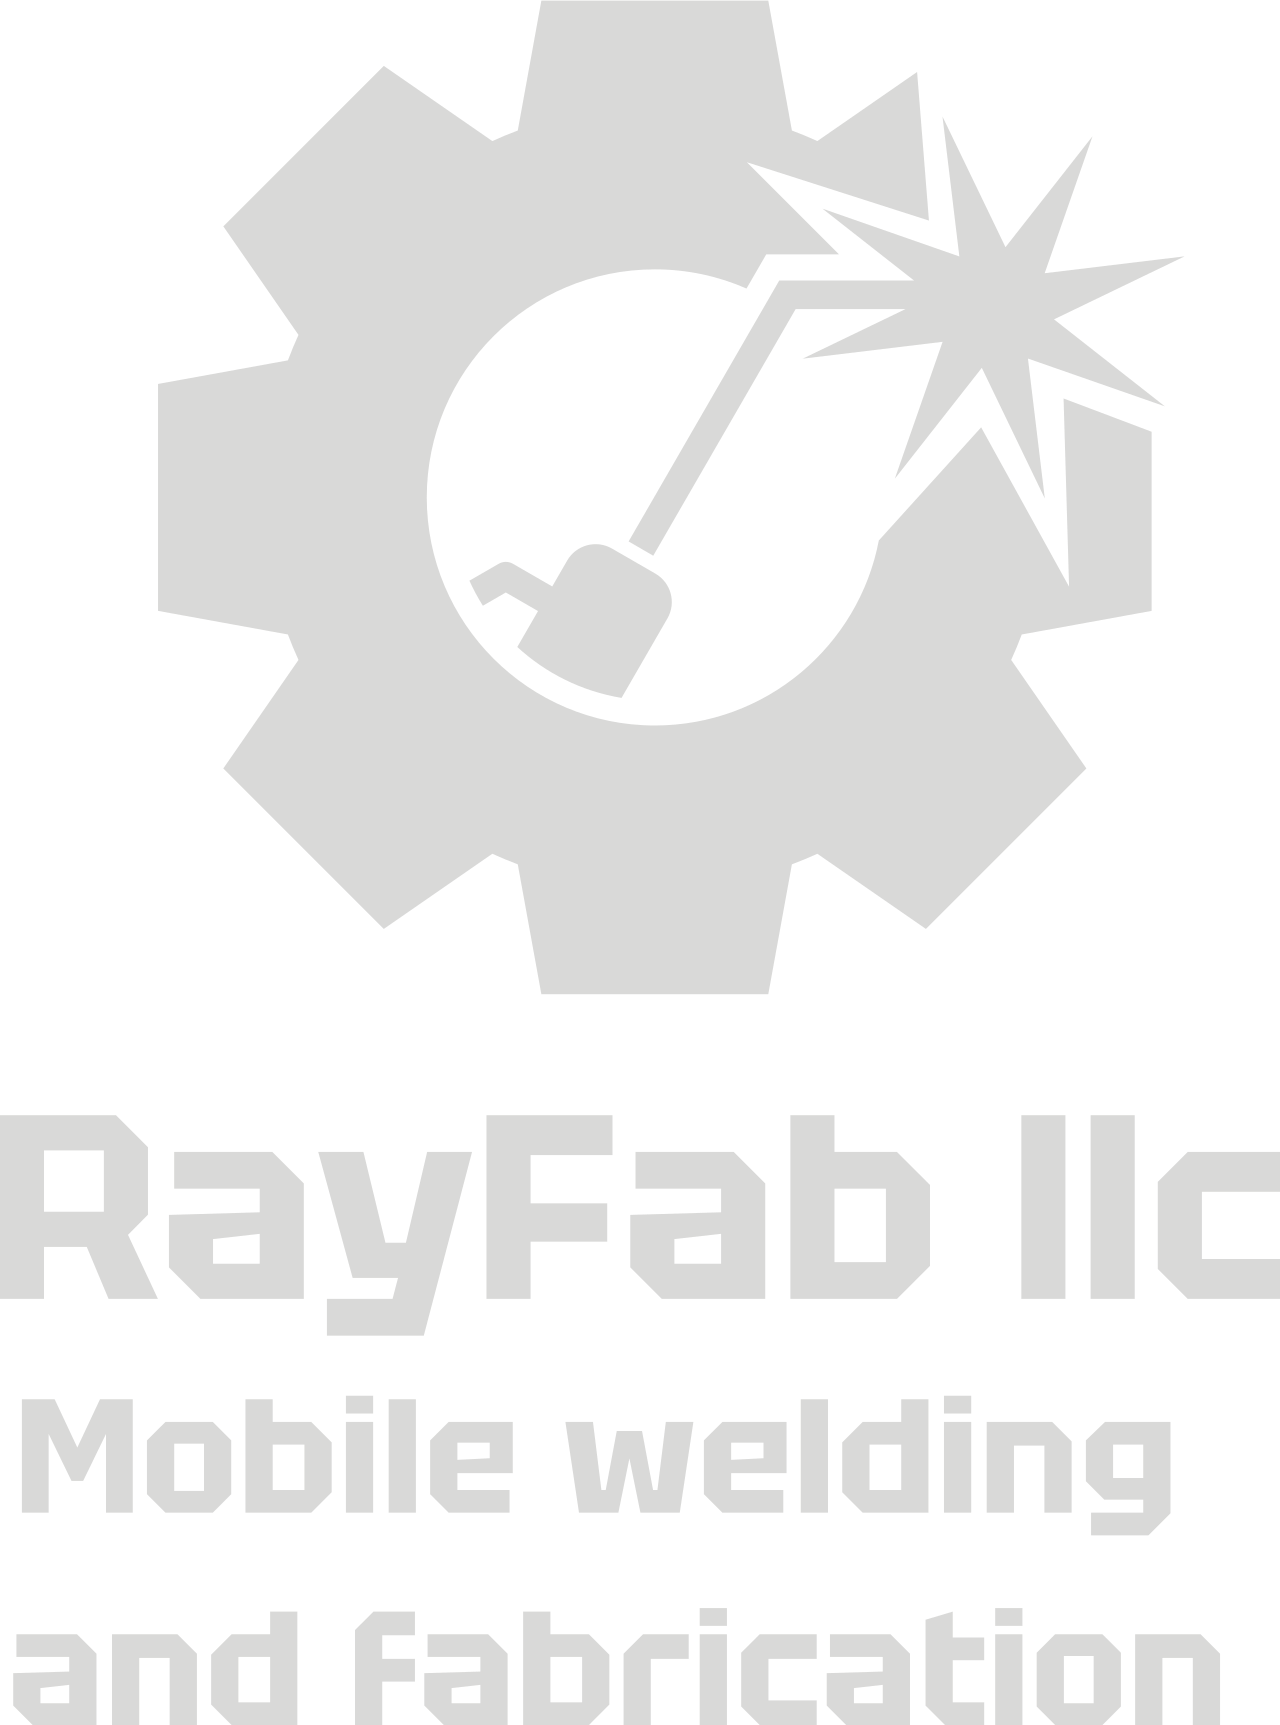 RayFab llc 's logo